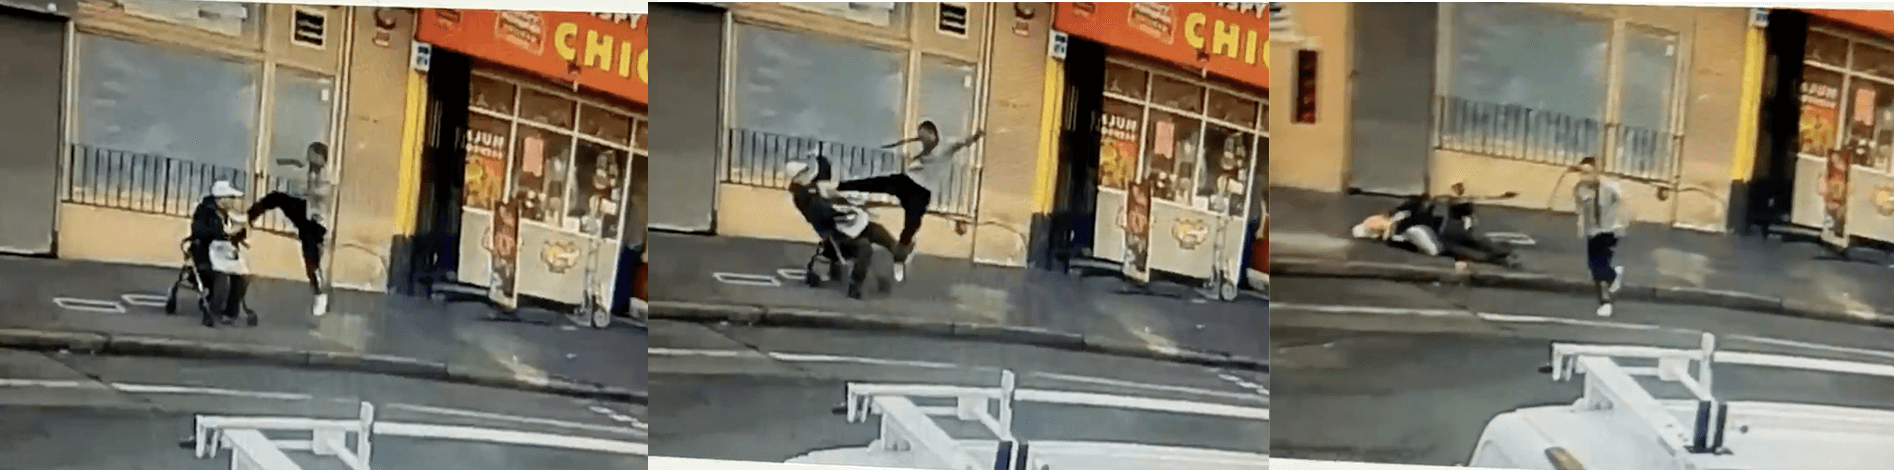 Stills from a street surveillance camera show a suspect kicking a man out of a walker seat.